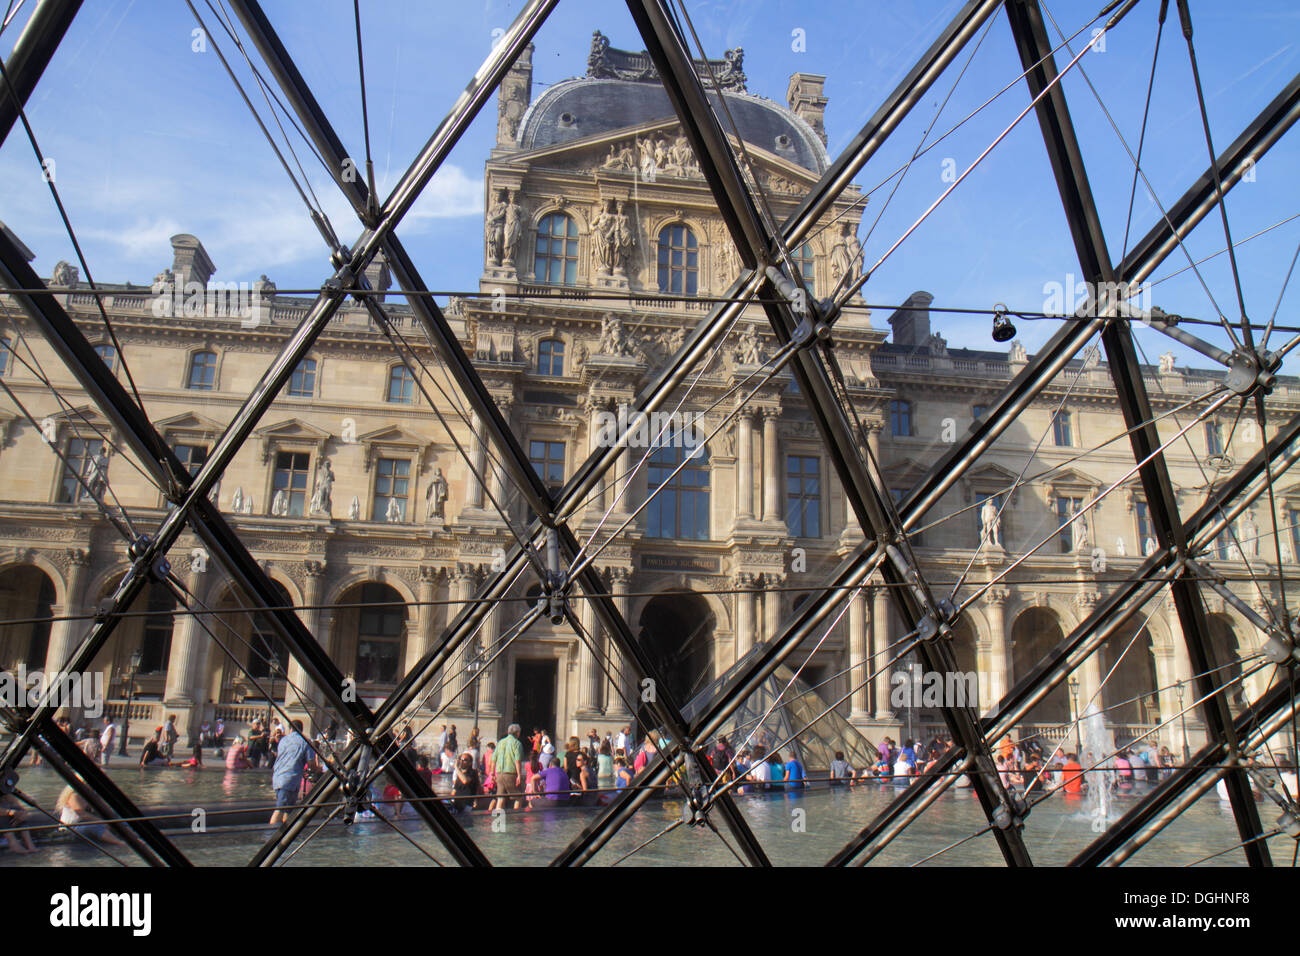 Paris France,1st arrondissement,Louvre Art Museum,Musee du Louvre Palace,interior inside,Pyramid,sculpture,France130821154 Stock Photo